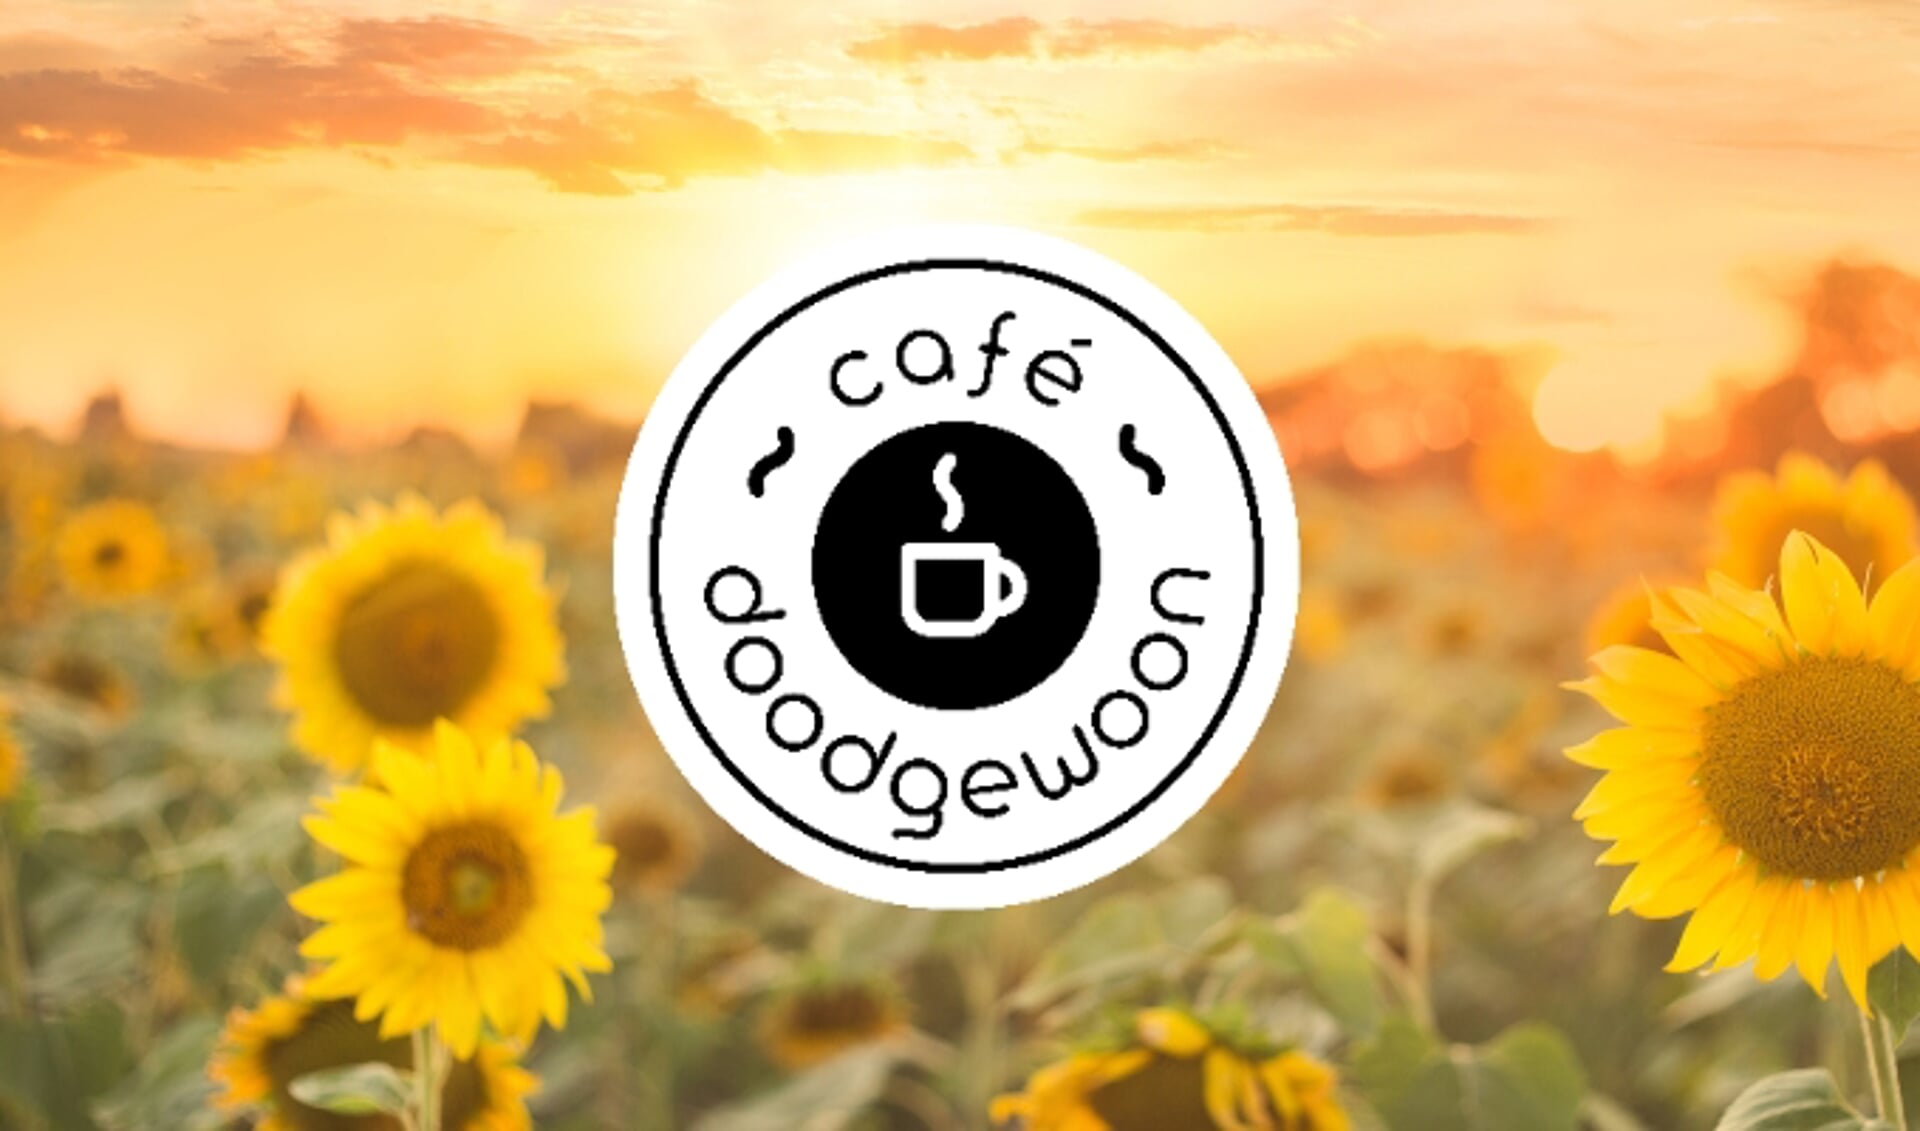 Café Doodgewoon